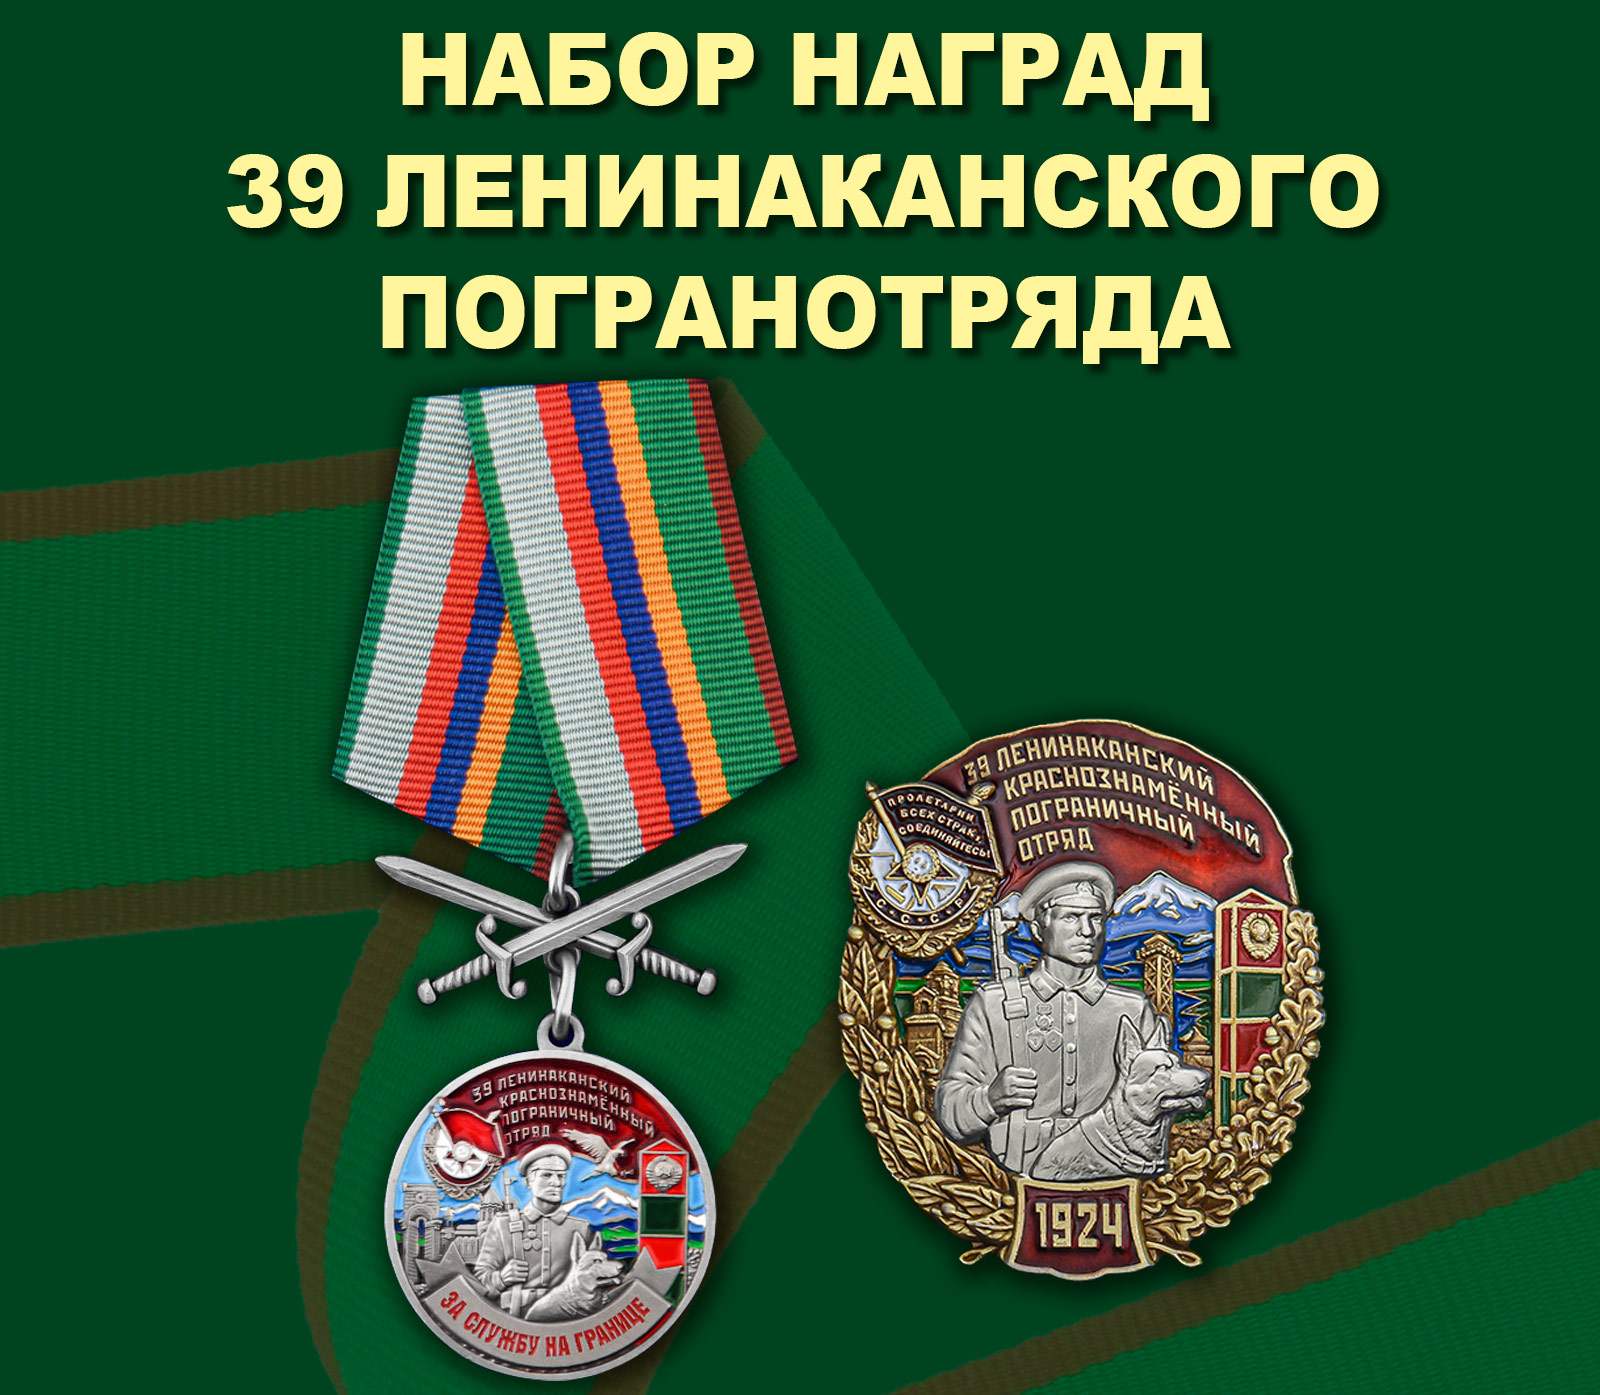 Купить памятный набор наград 39 Ленинаканского пограничного отряда